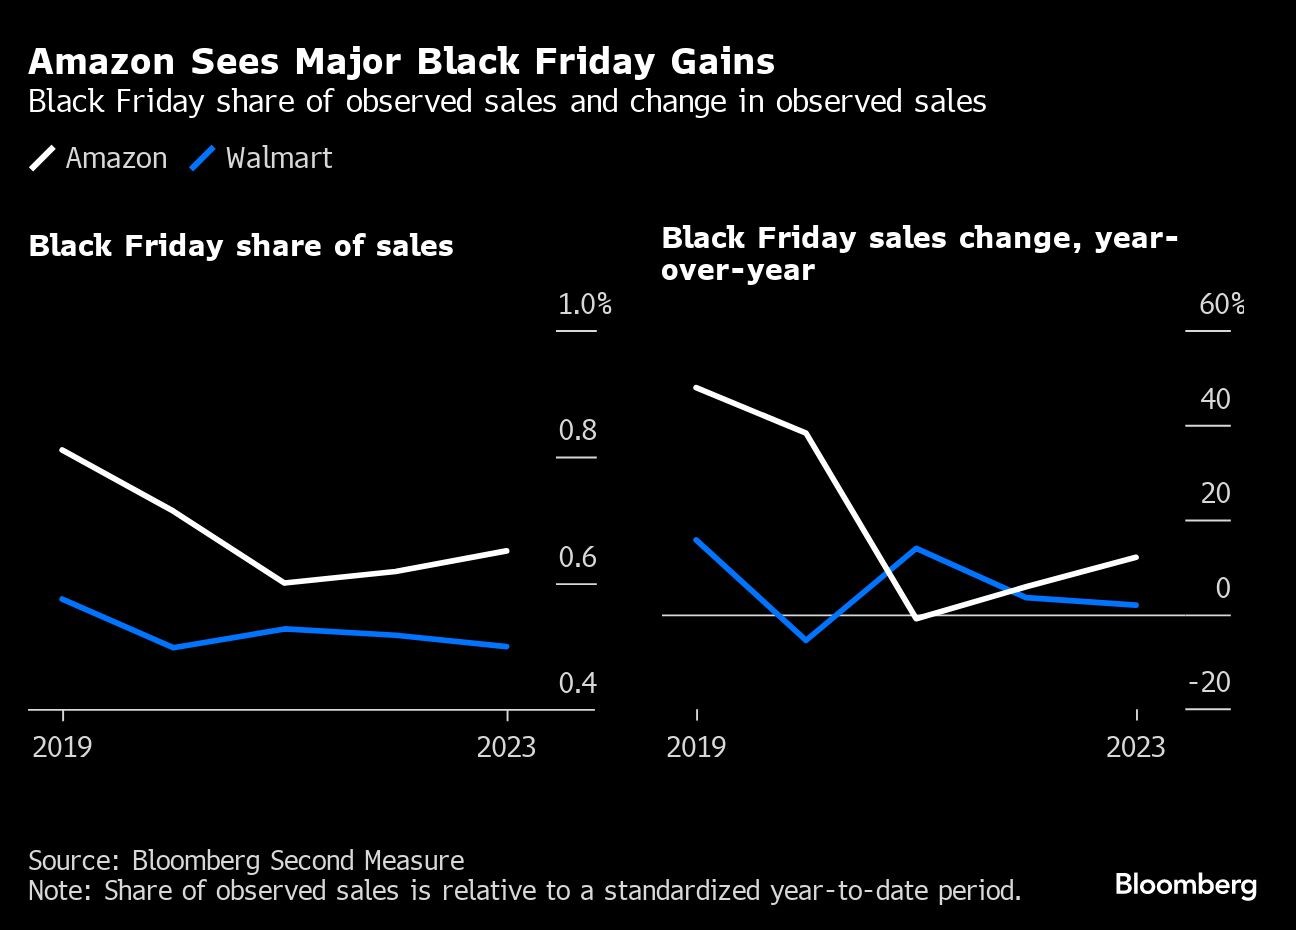 Amazon profitiert gegenüber dem stationären Einzelhandel von der Black Friday Rabattschlacht